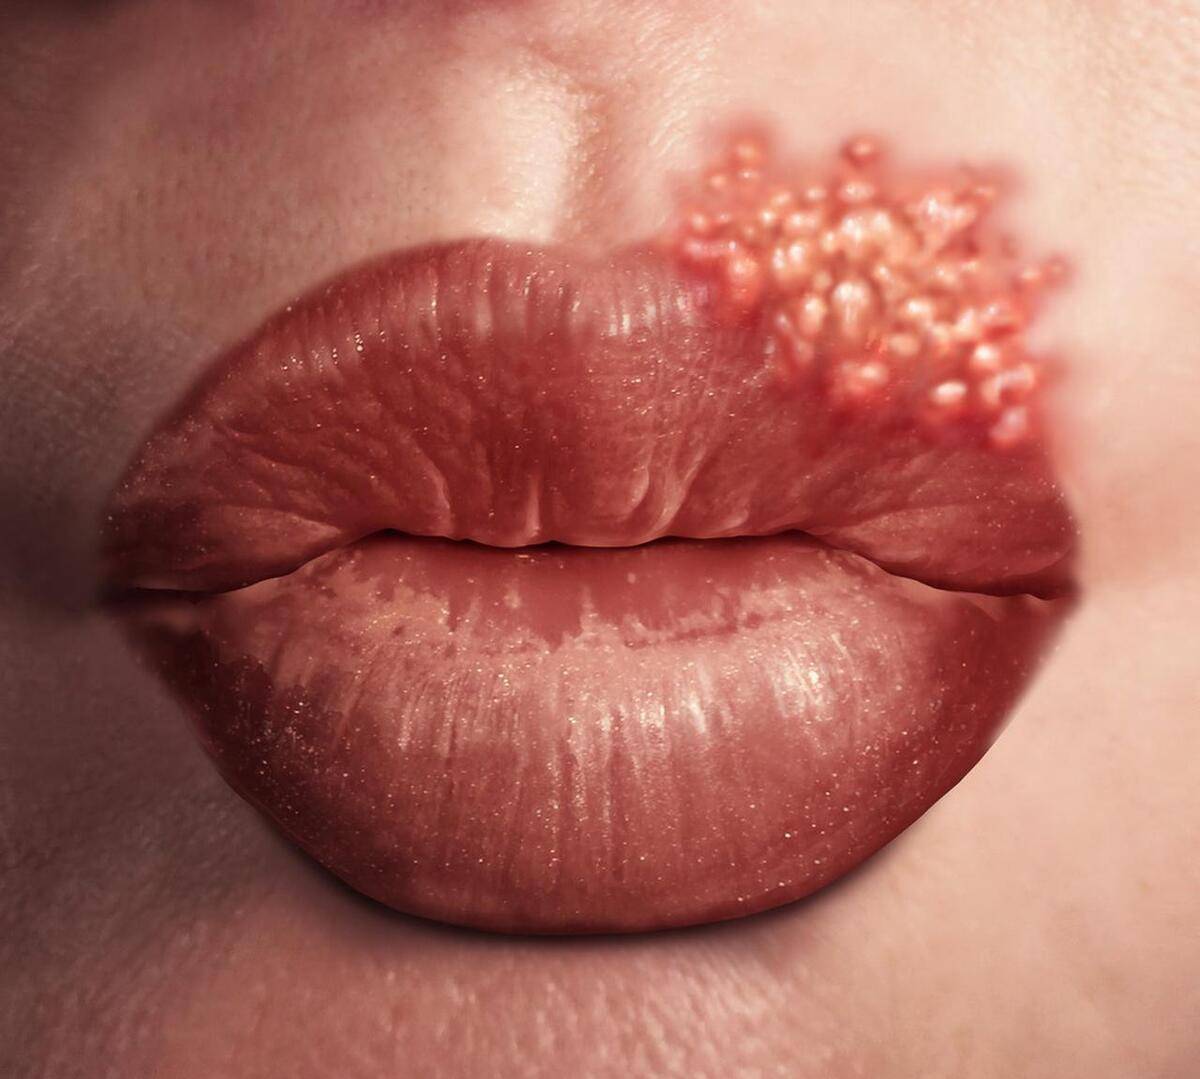 唇疱疹:上火也容易引起唇疱疹的发生,患者的嘴唇会出现红肿,疼痛和